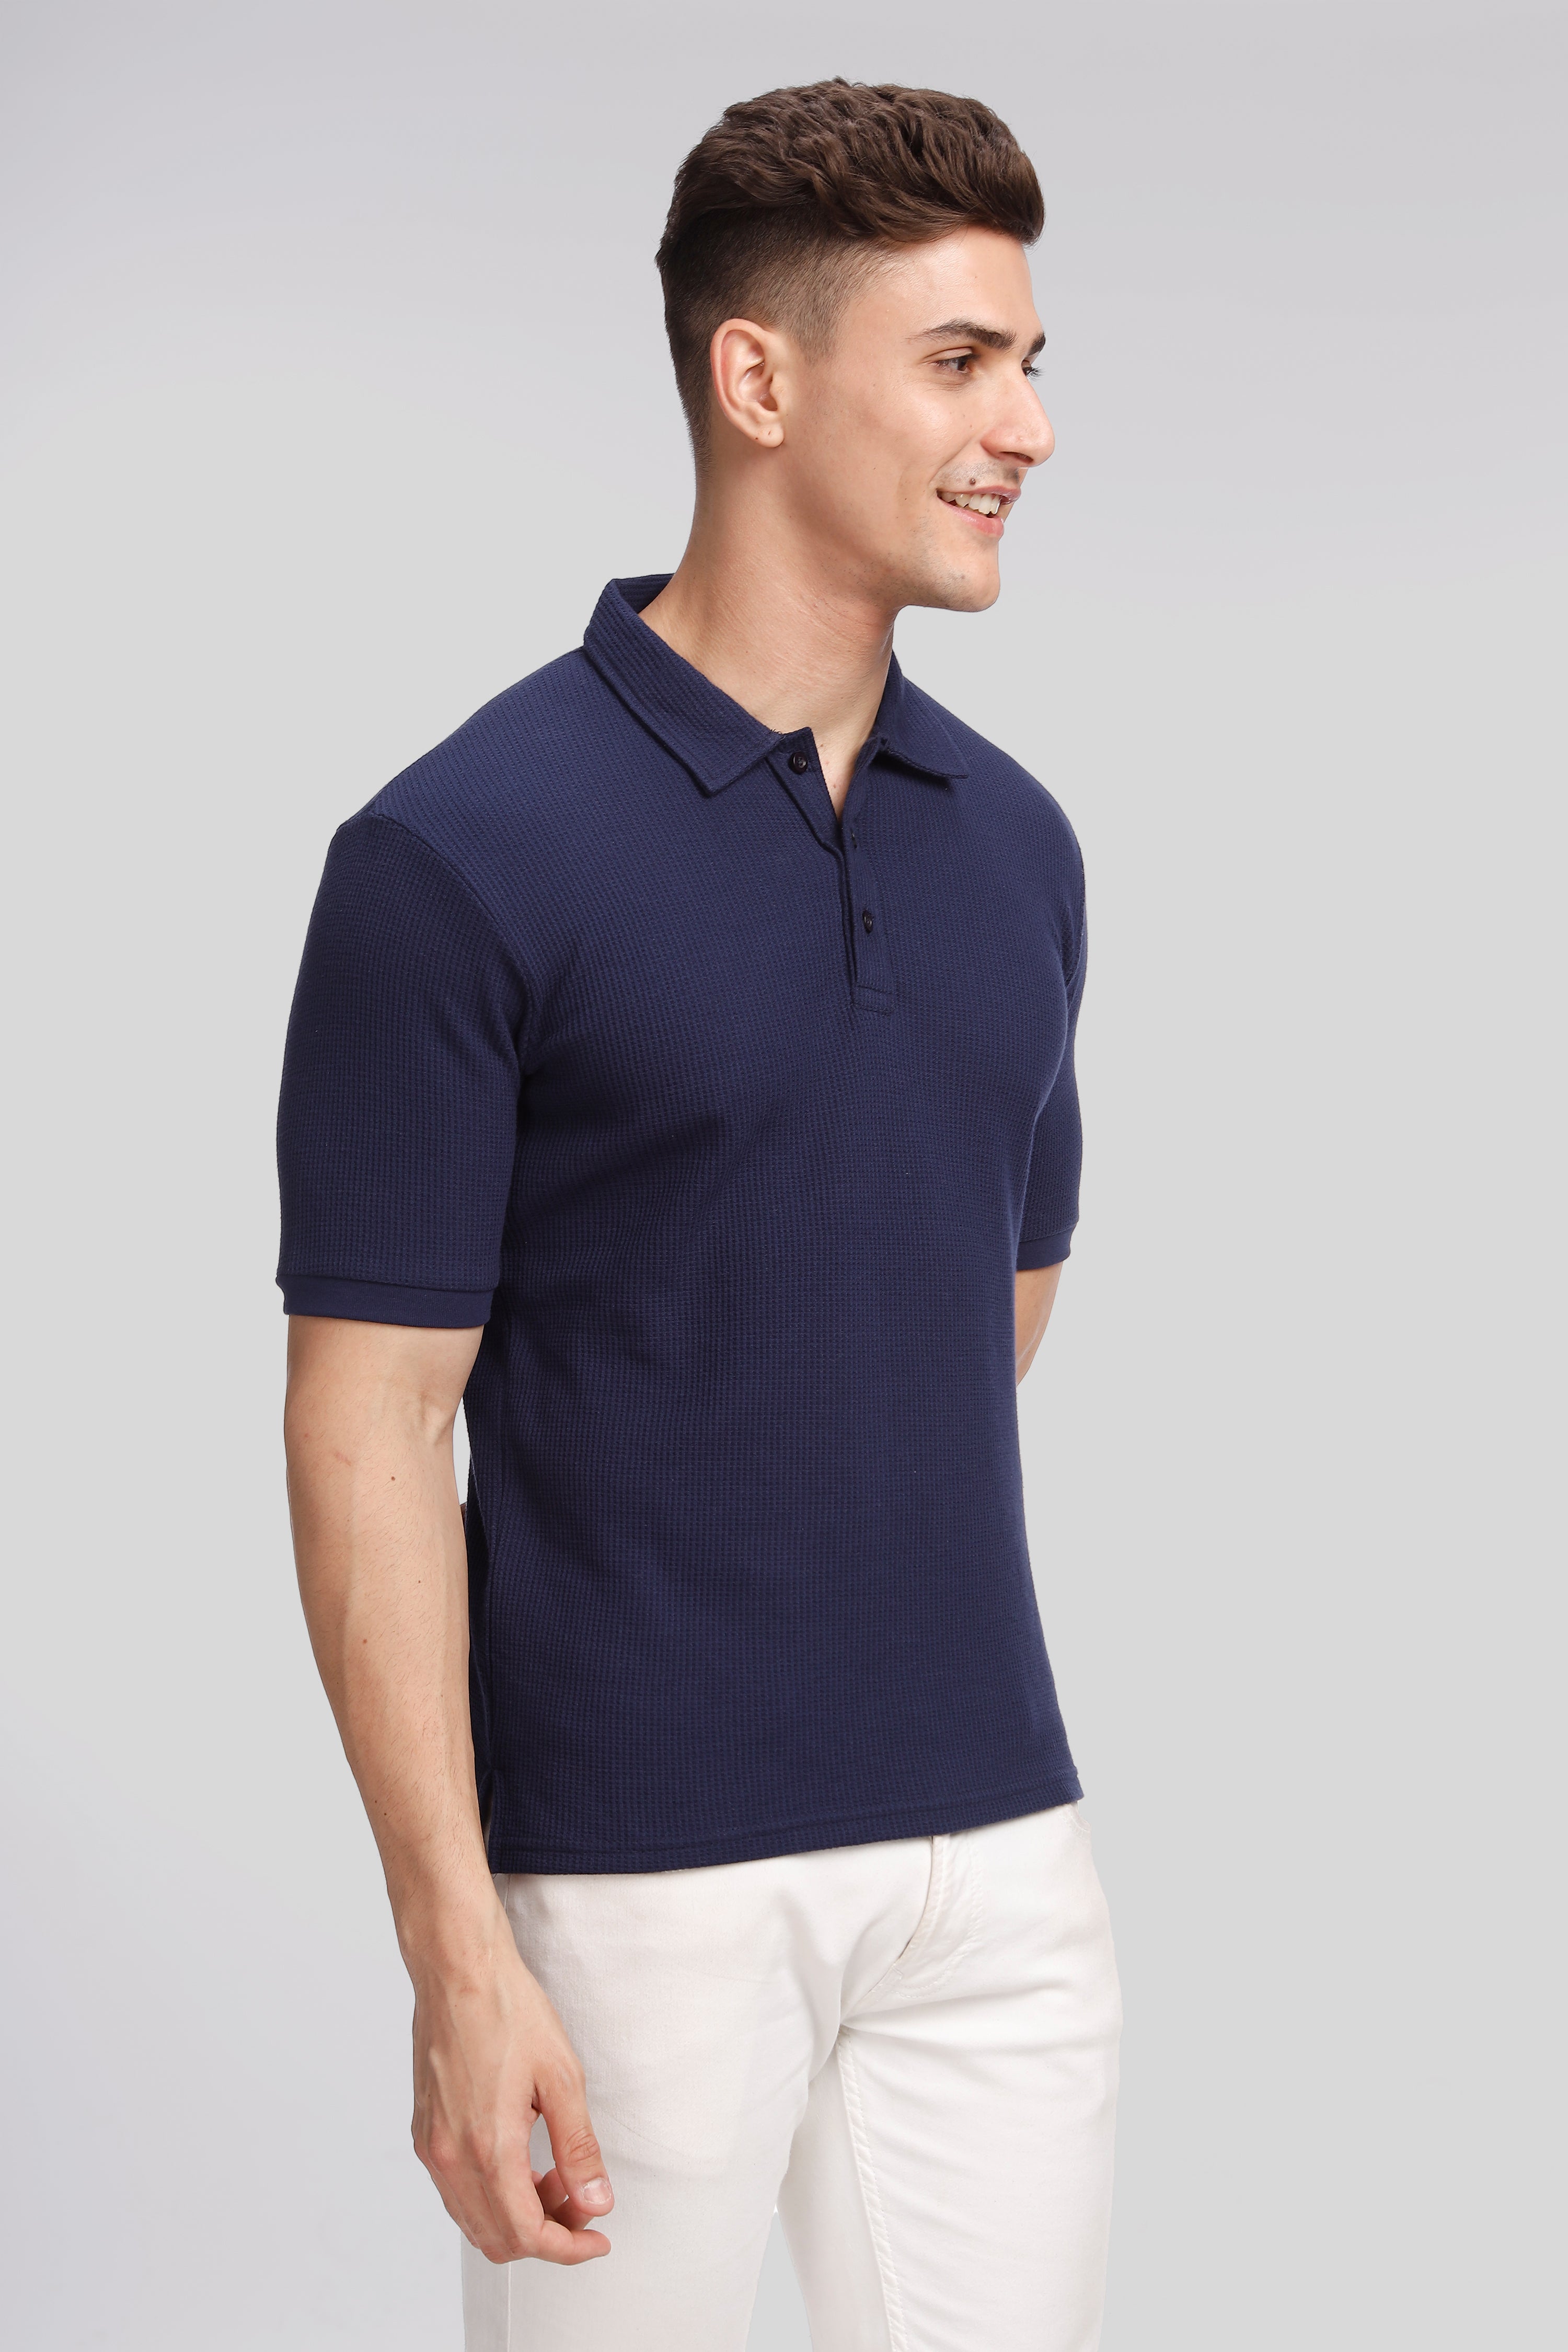 Navy Waffle Knit Polo T-Shirt